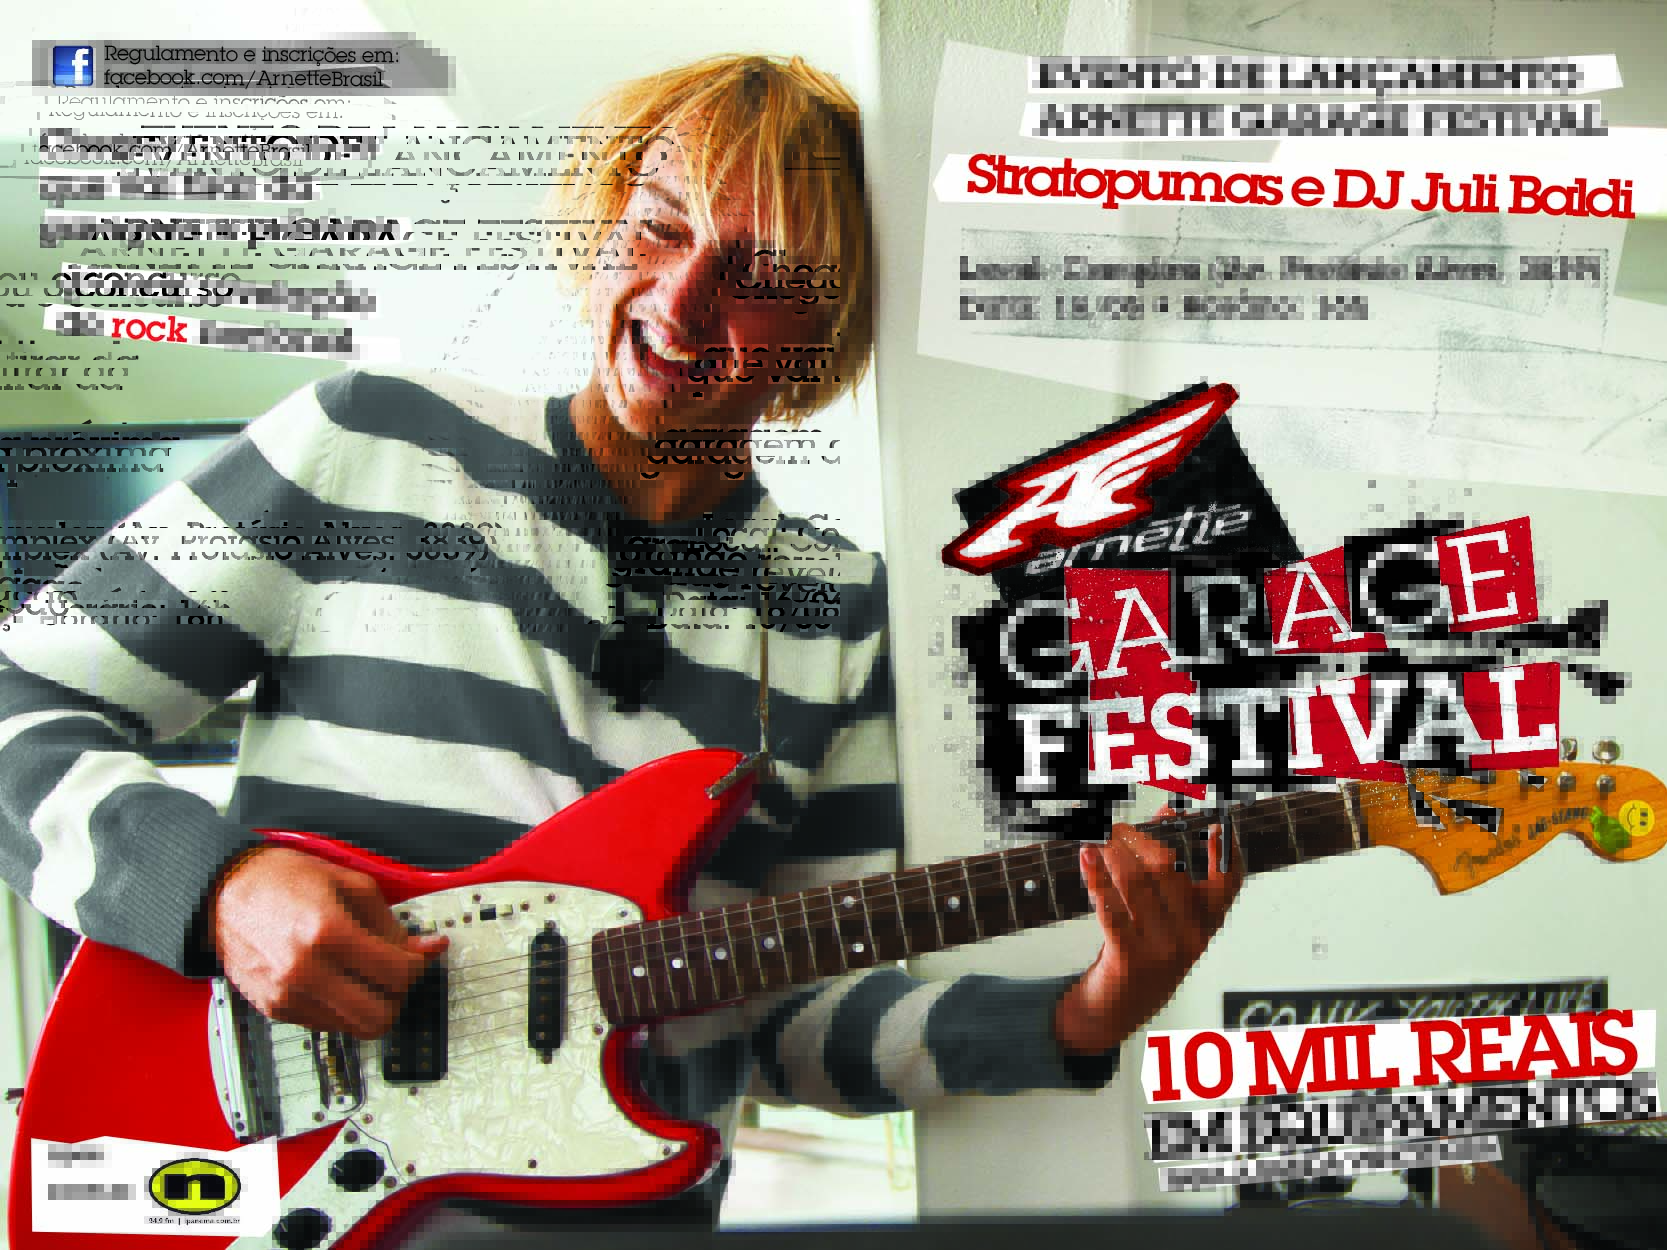 Arnette Garage Festival